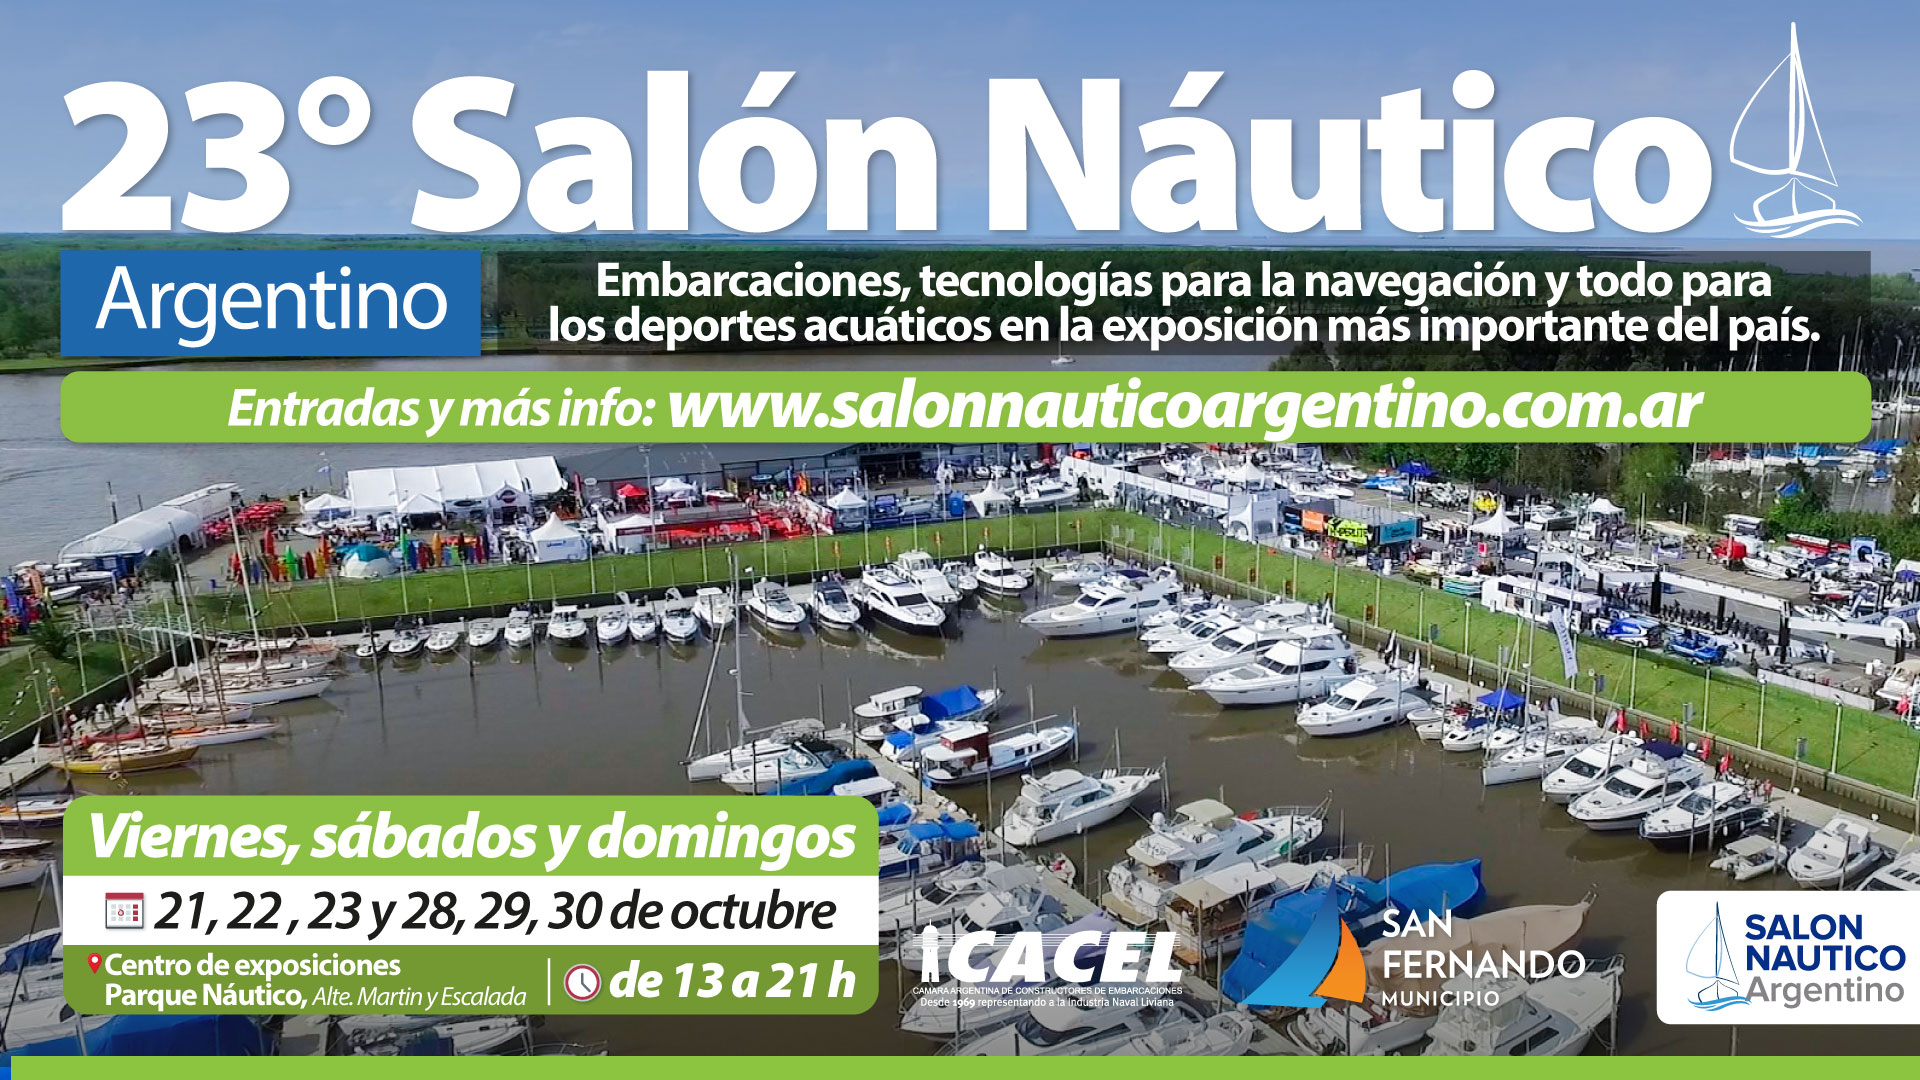 Este fin de semana comienza el Salón Náutico Argentino en San Fernando